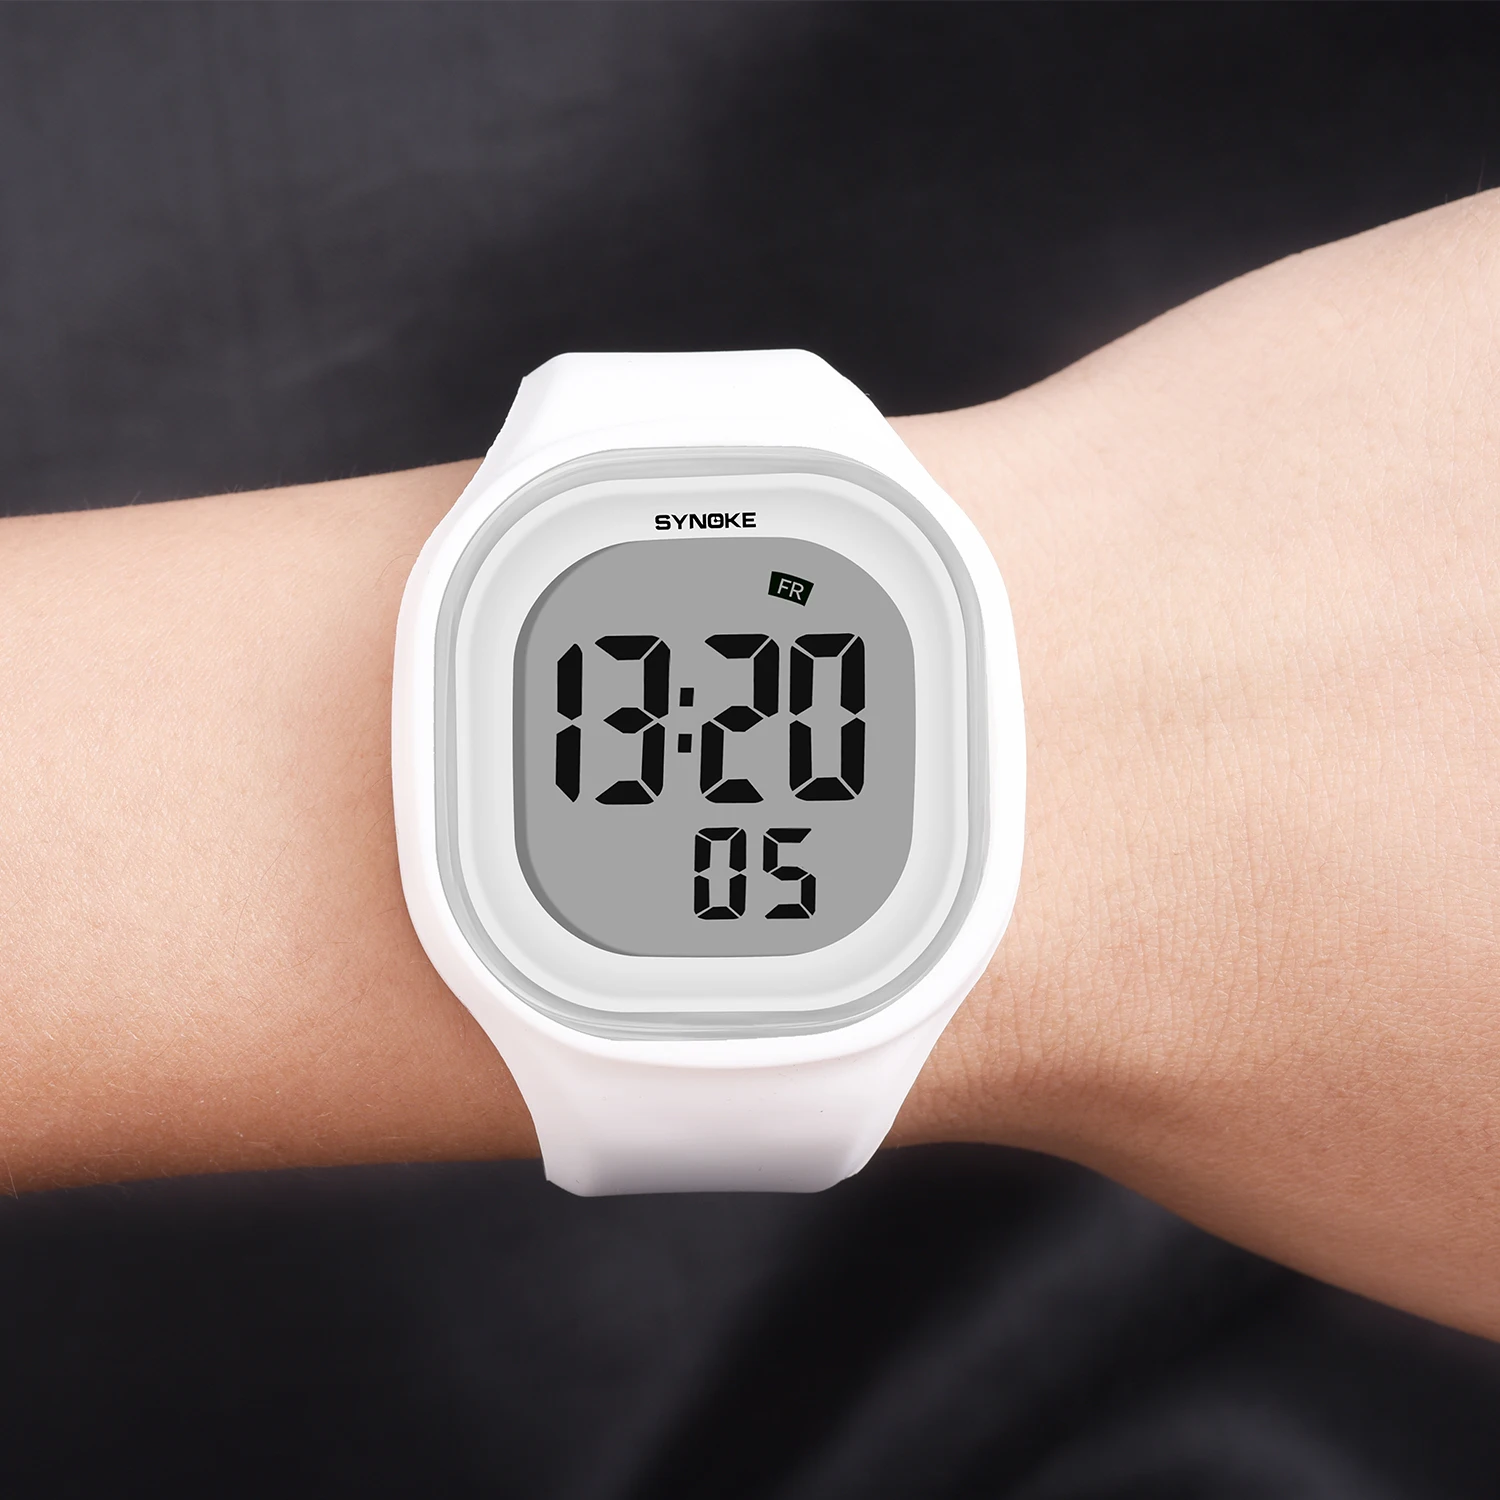 SYNOKE Männer Digitale Handgelenk Uhren Sport LED Alarm Uhr 50M Wasserdicht Timer Frauen Elektronische Uhr Relogio Masculino